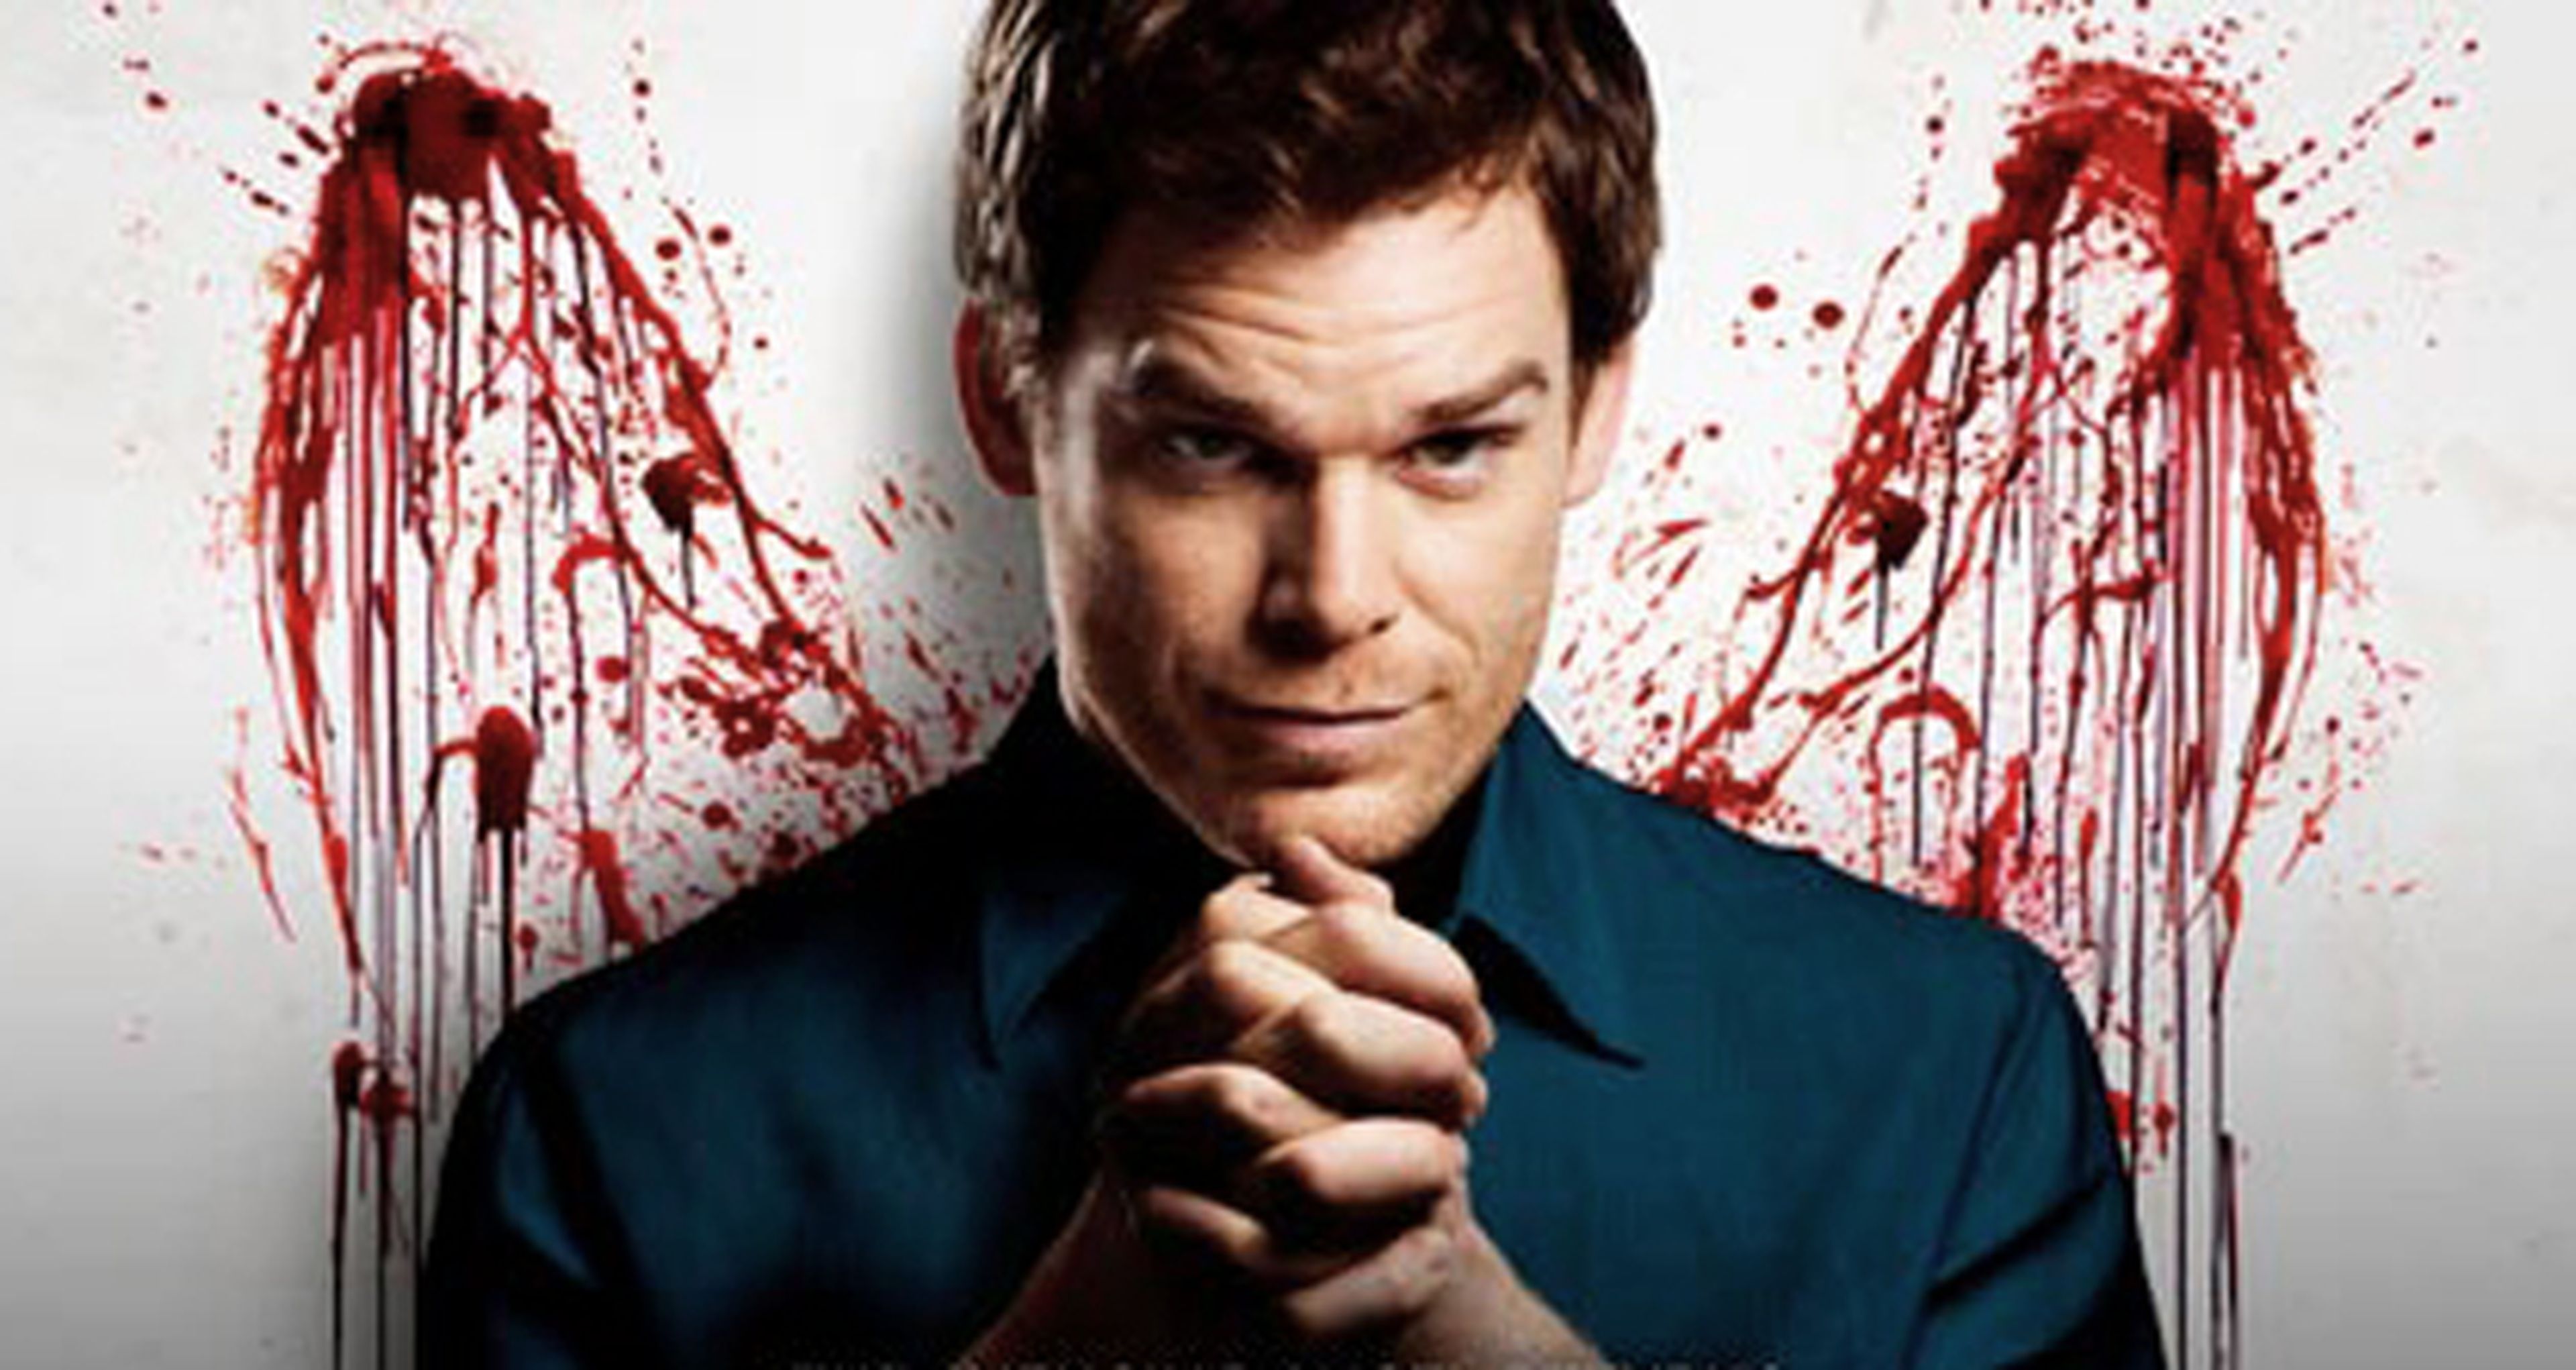 Clip en exclusiva de Dexter, ¡vuelve el ángel de la venganza!